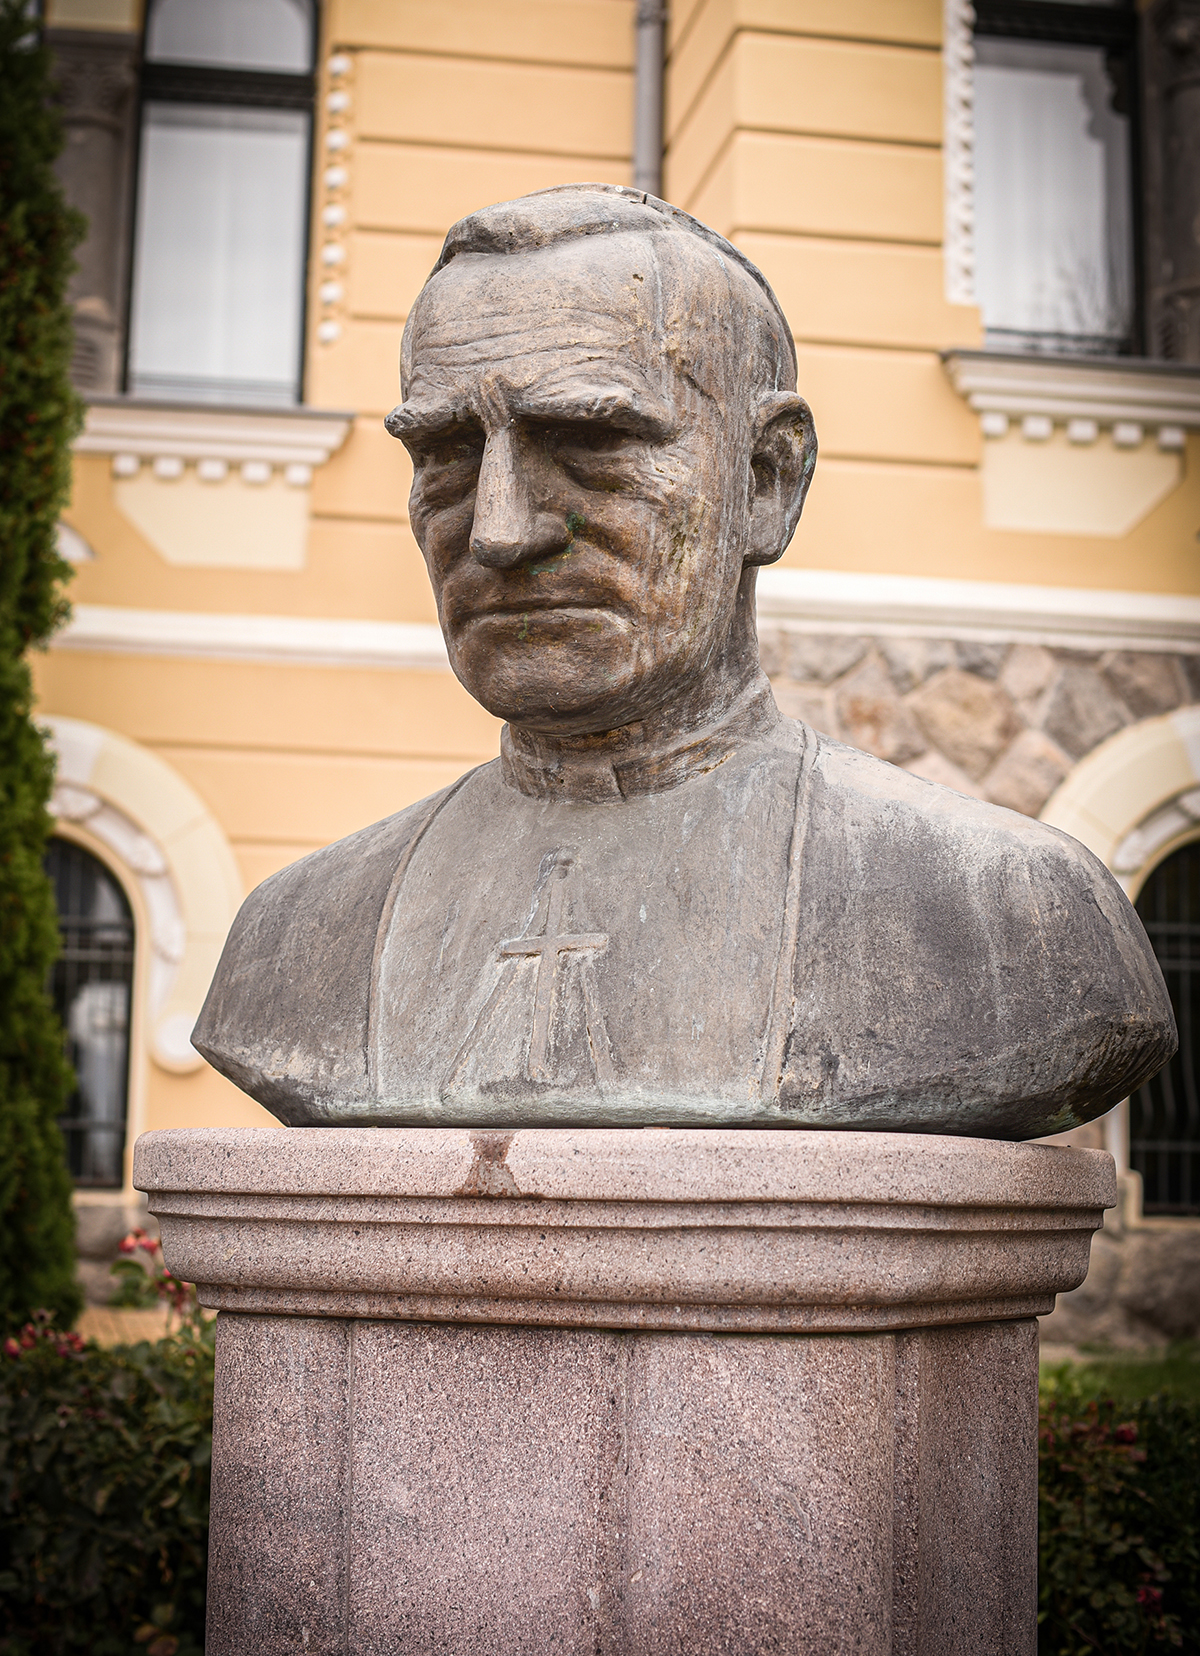 László F. Csaba